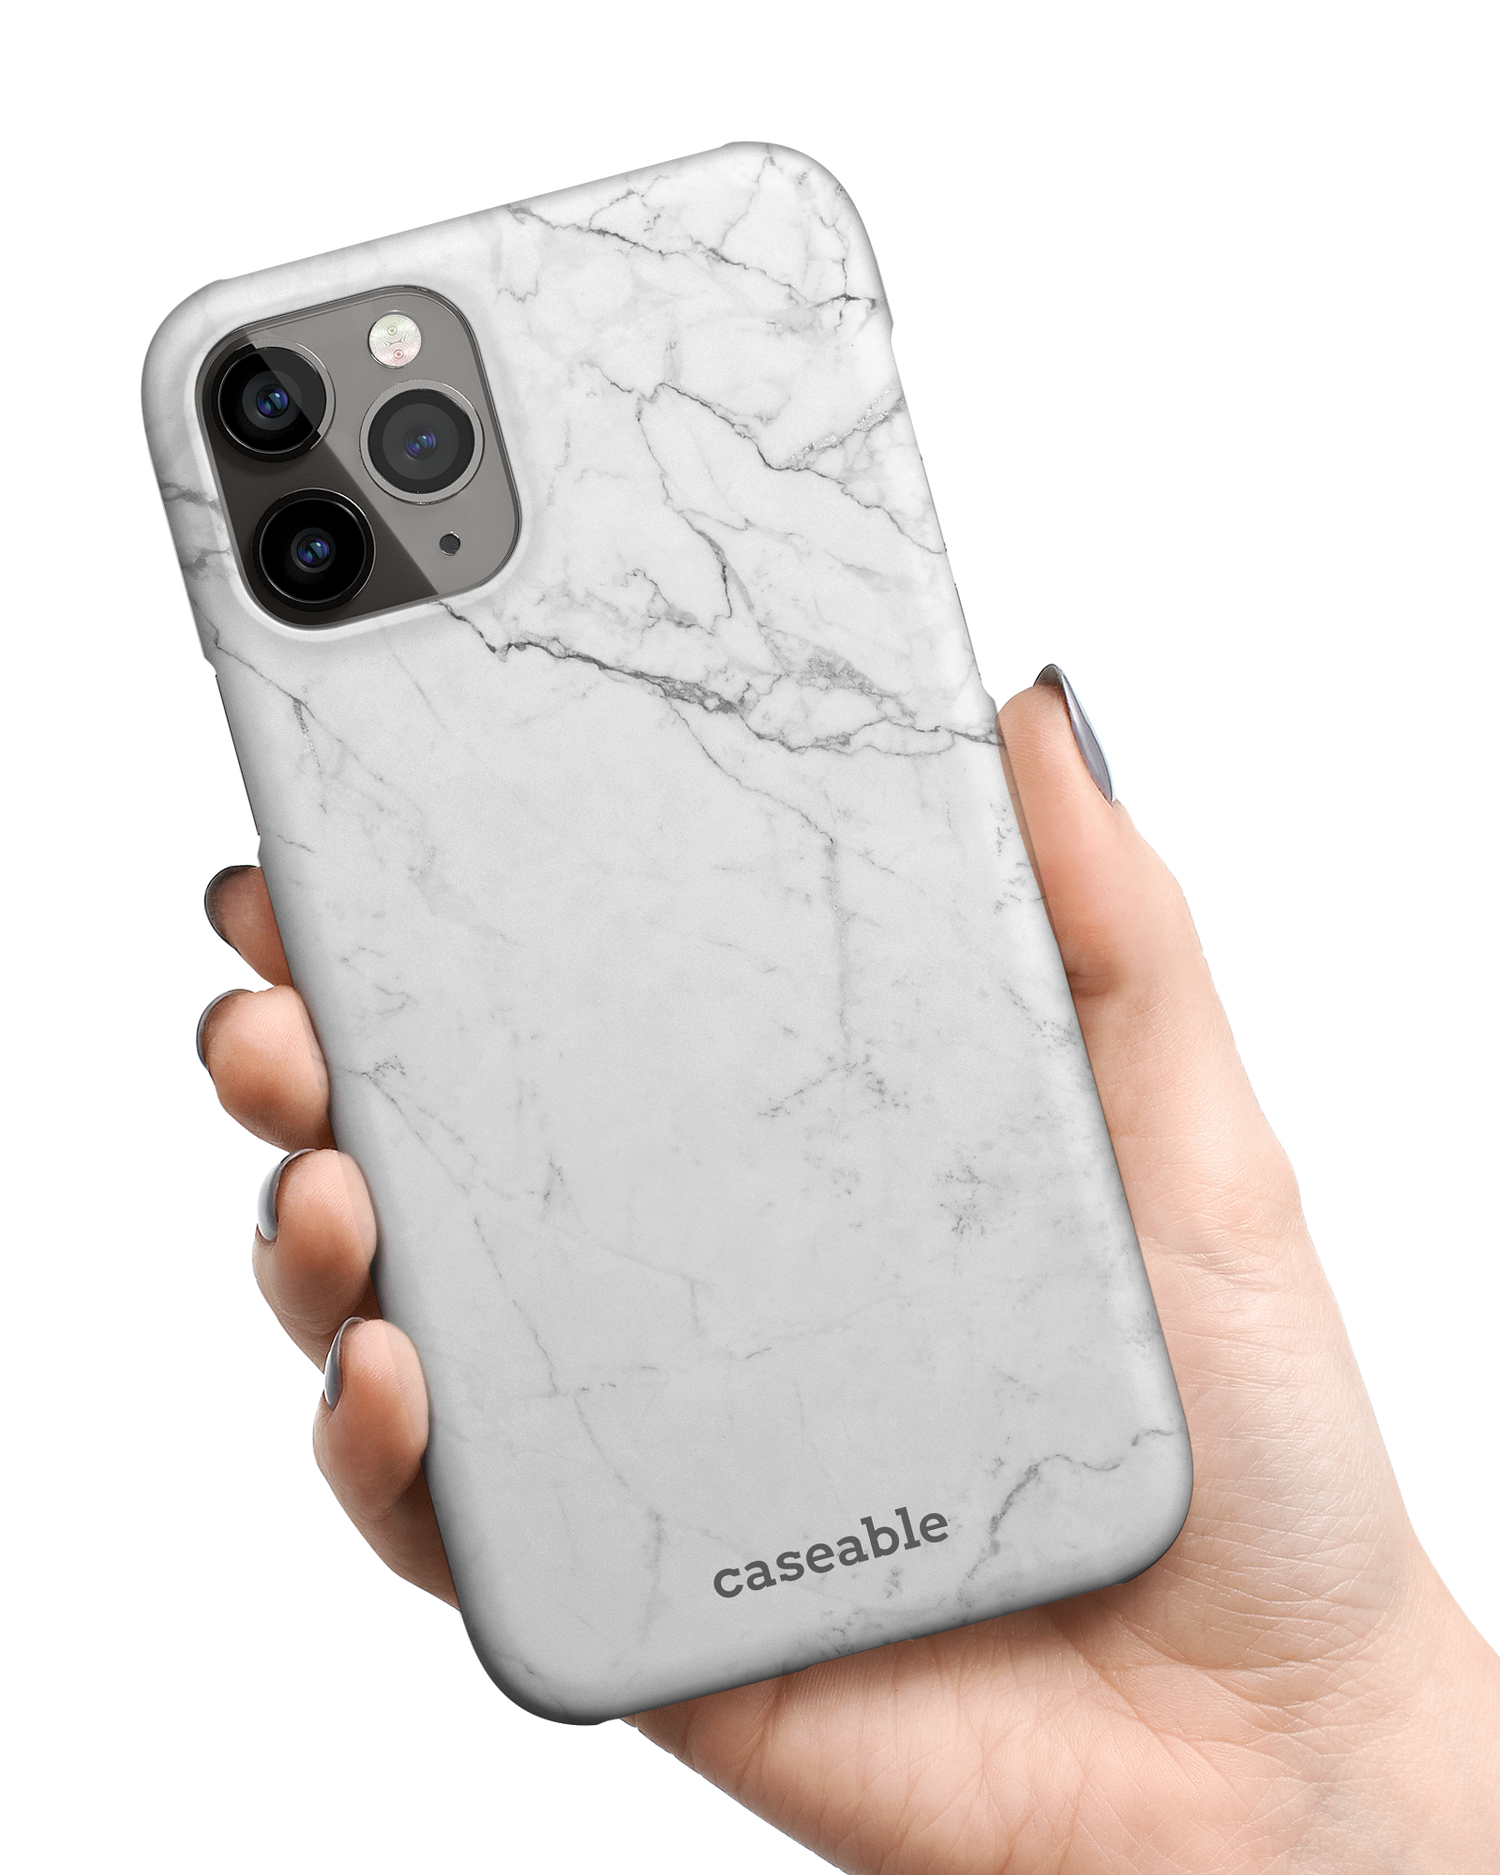 White Marble Hardcase Handyhülle Apple iPhone 11 Pro Max in der Hand gehalten